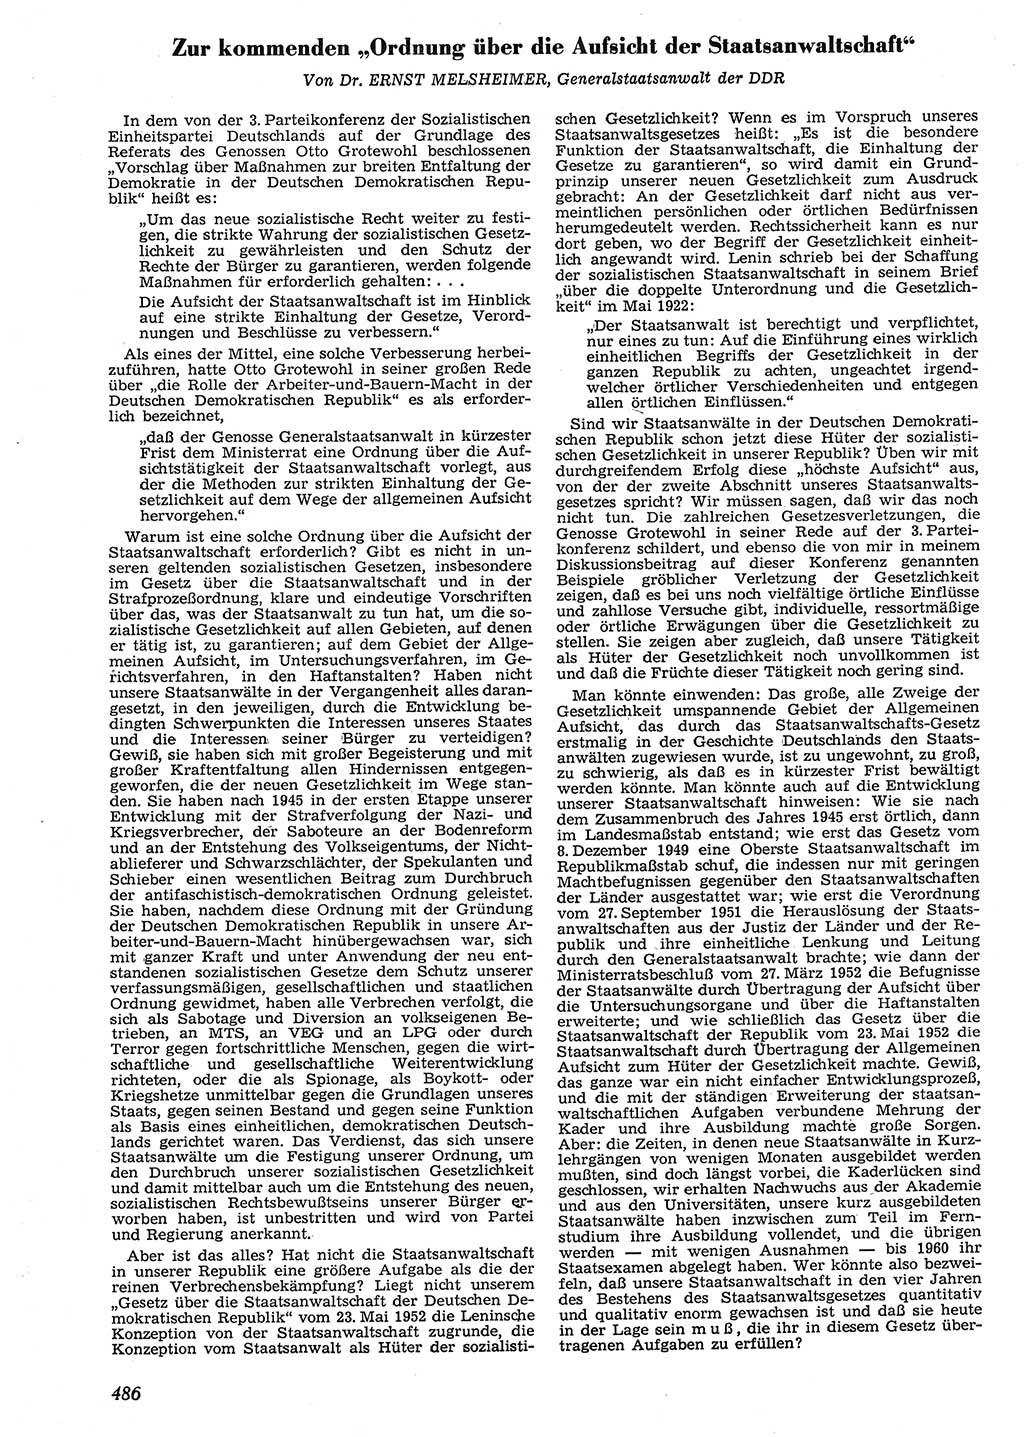 Neue Justiz (NJ), Zeitschrift für Recht und Rechtswissenschaft [Deutsche Demokratische Republik (DDR)], 10. Jahrgang 1956, Seite 486 (NJ DDR 1956, S. 486)